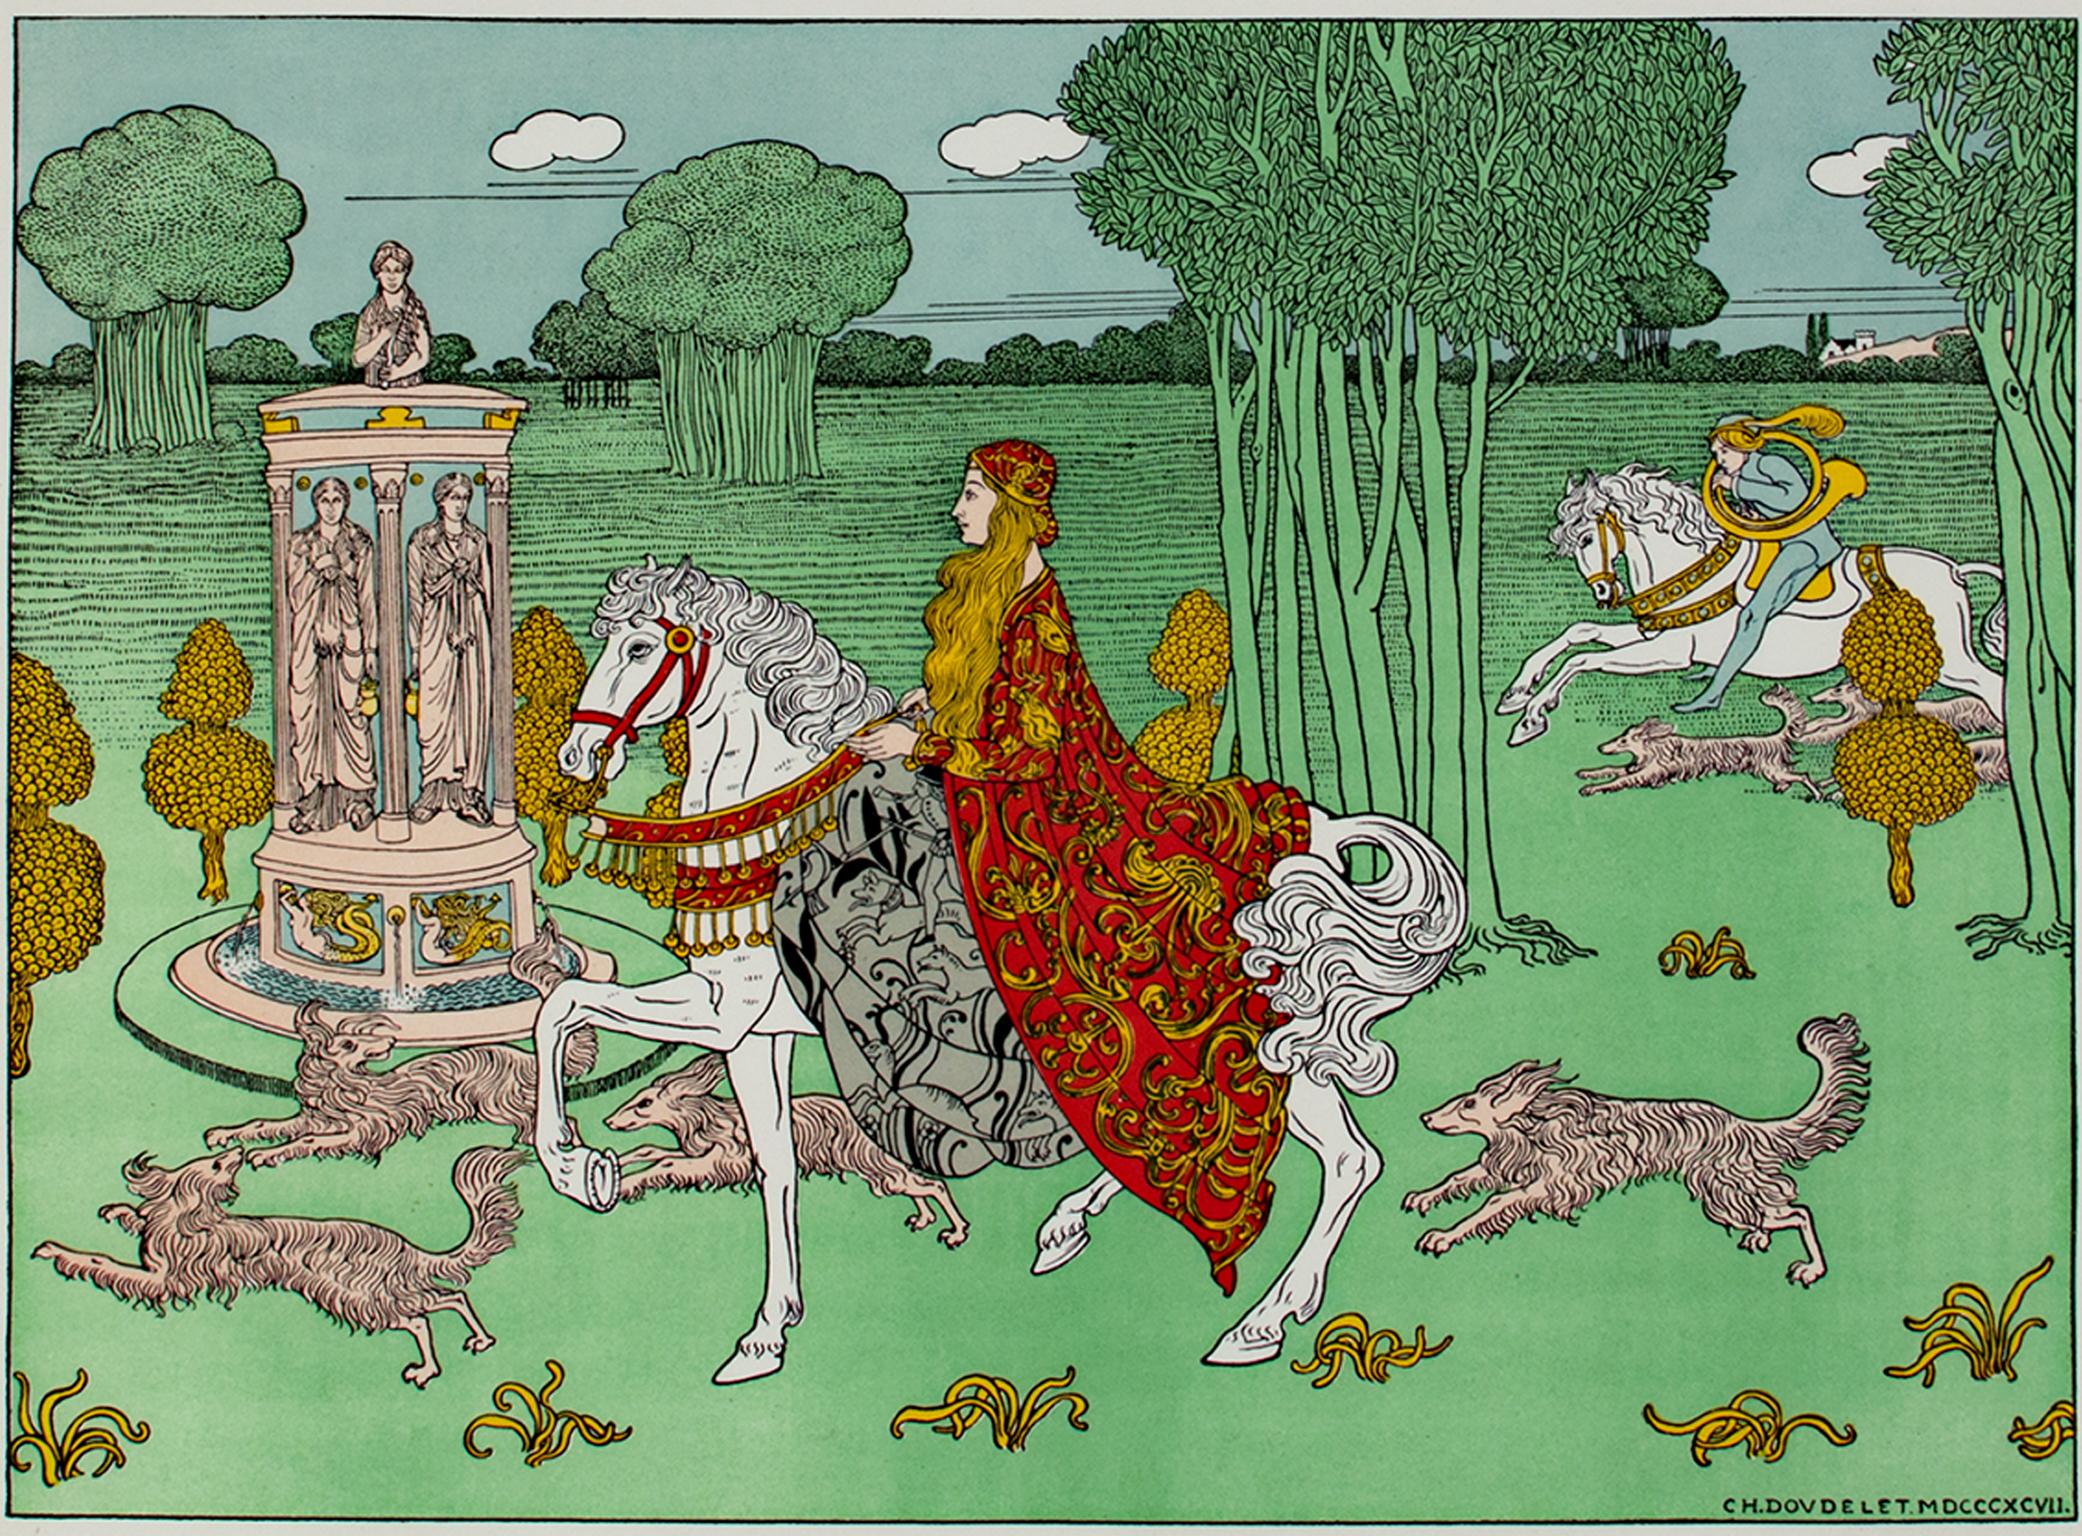 "La Chatelaine" est une lithographie originale en couleurs de Charles Doudelet. Le nom de l'artiste est inscrit en bas à droite. Cette pièce, représentant une femme riche sur un cheval blanc entourée de chiens, a été publiée dans la revue d'Art